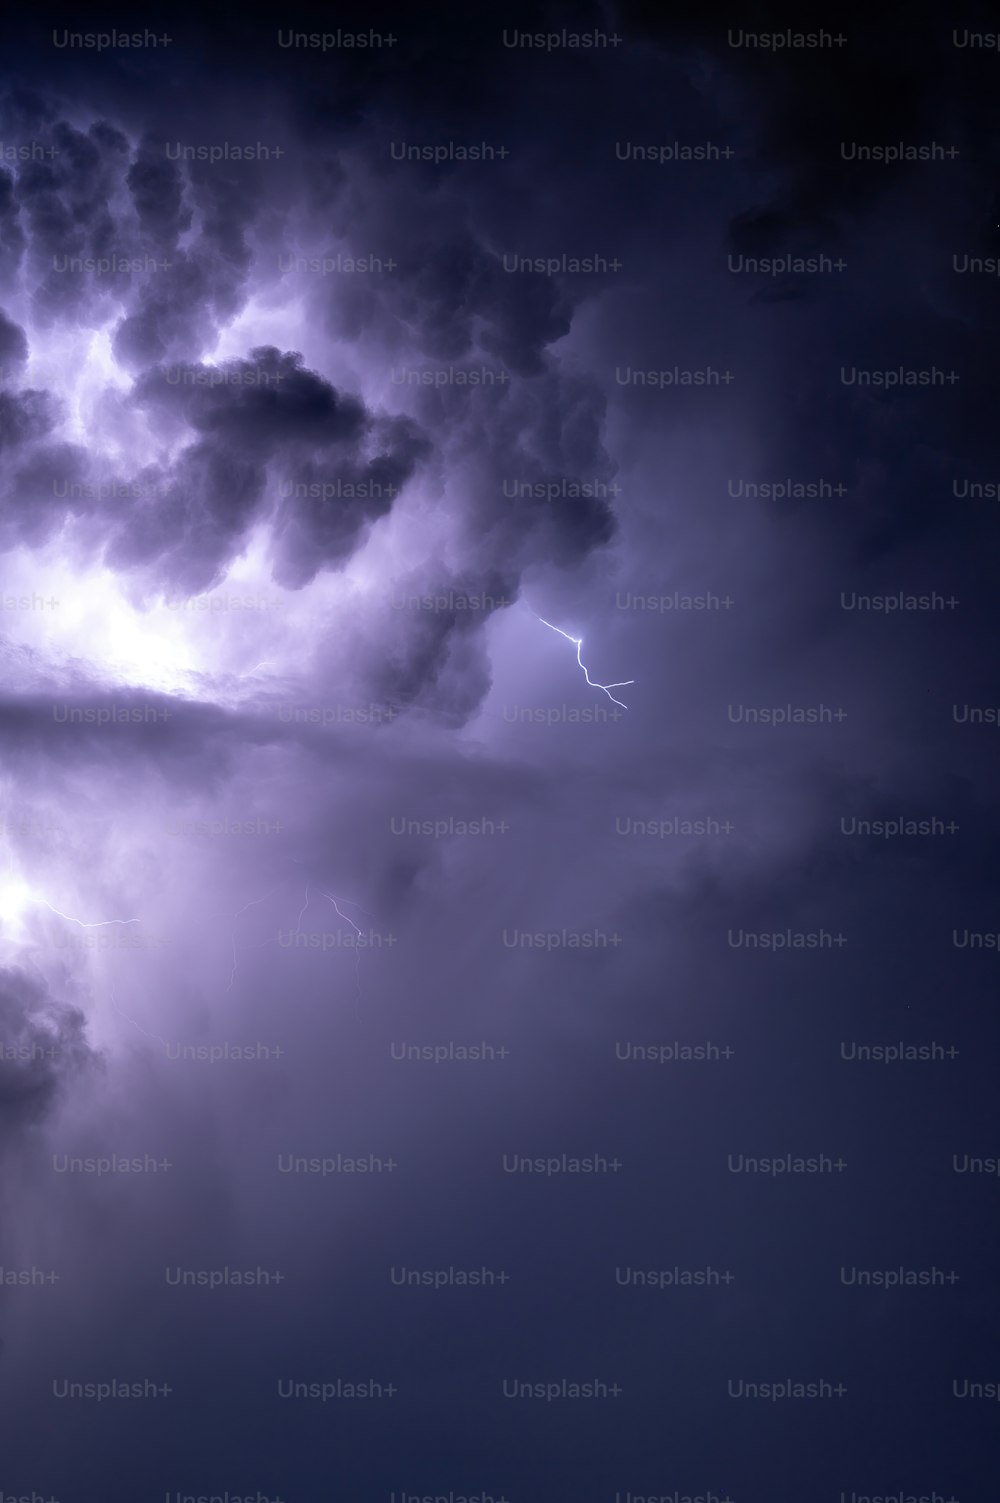 Una tormenta eléctrica se ve en el cielo